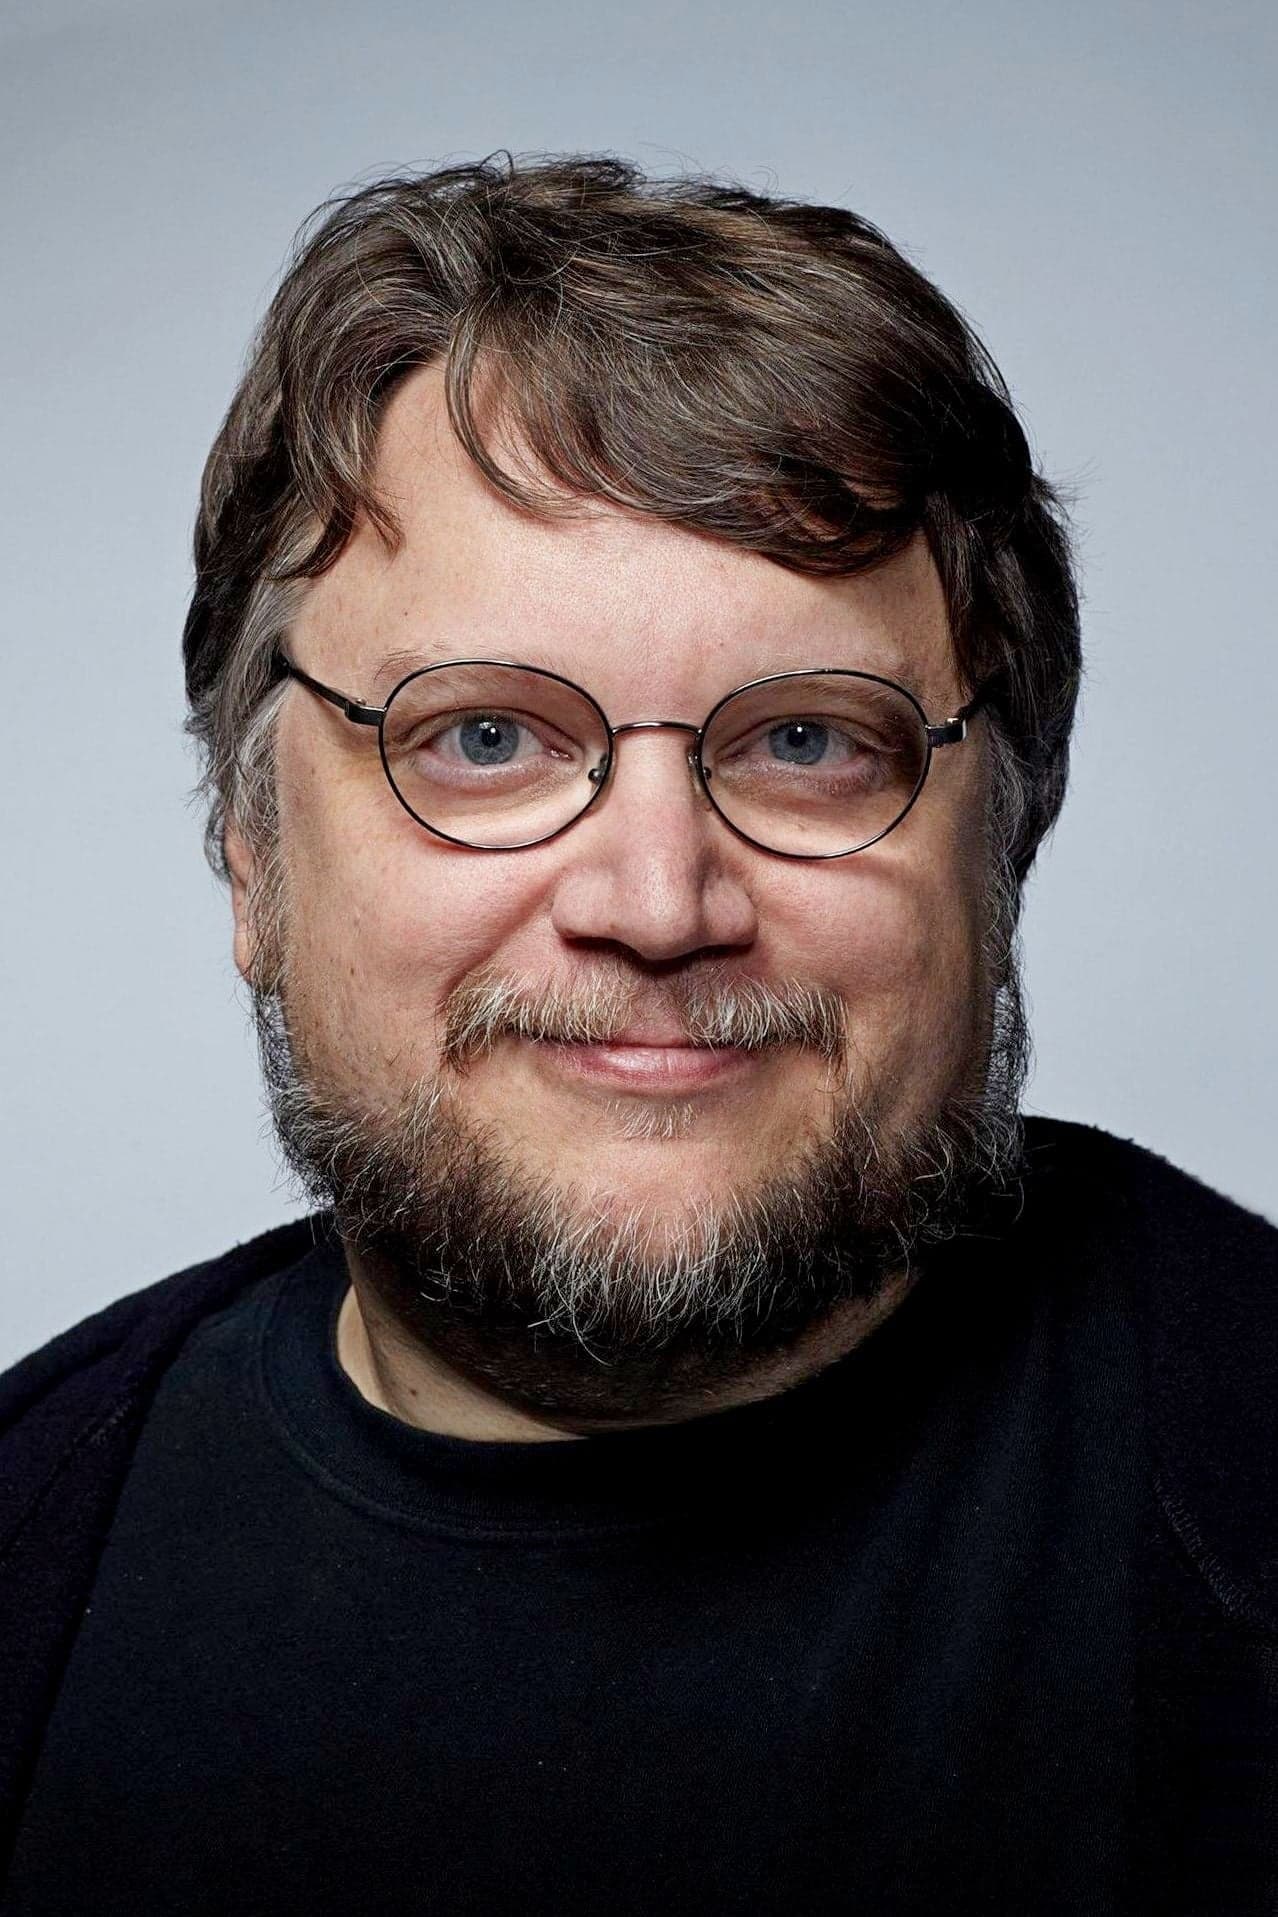 Guillermo del Toro | Thanks